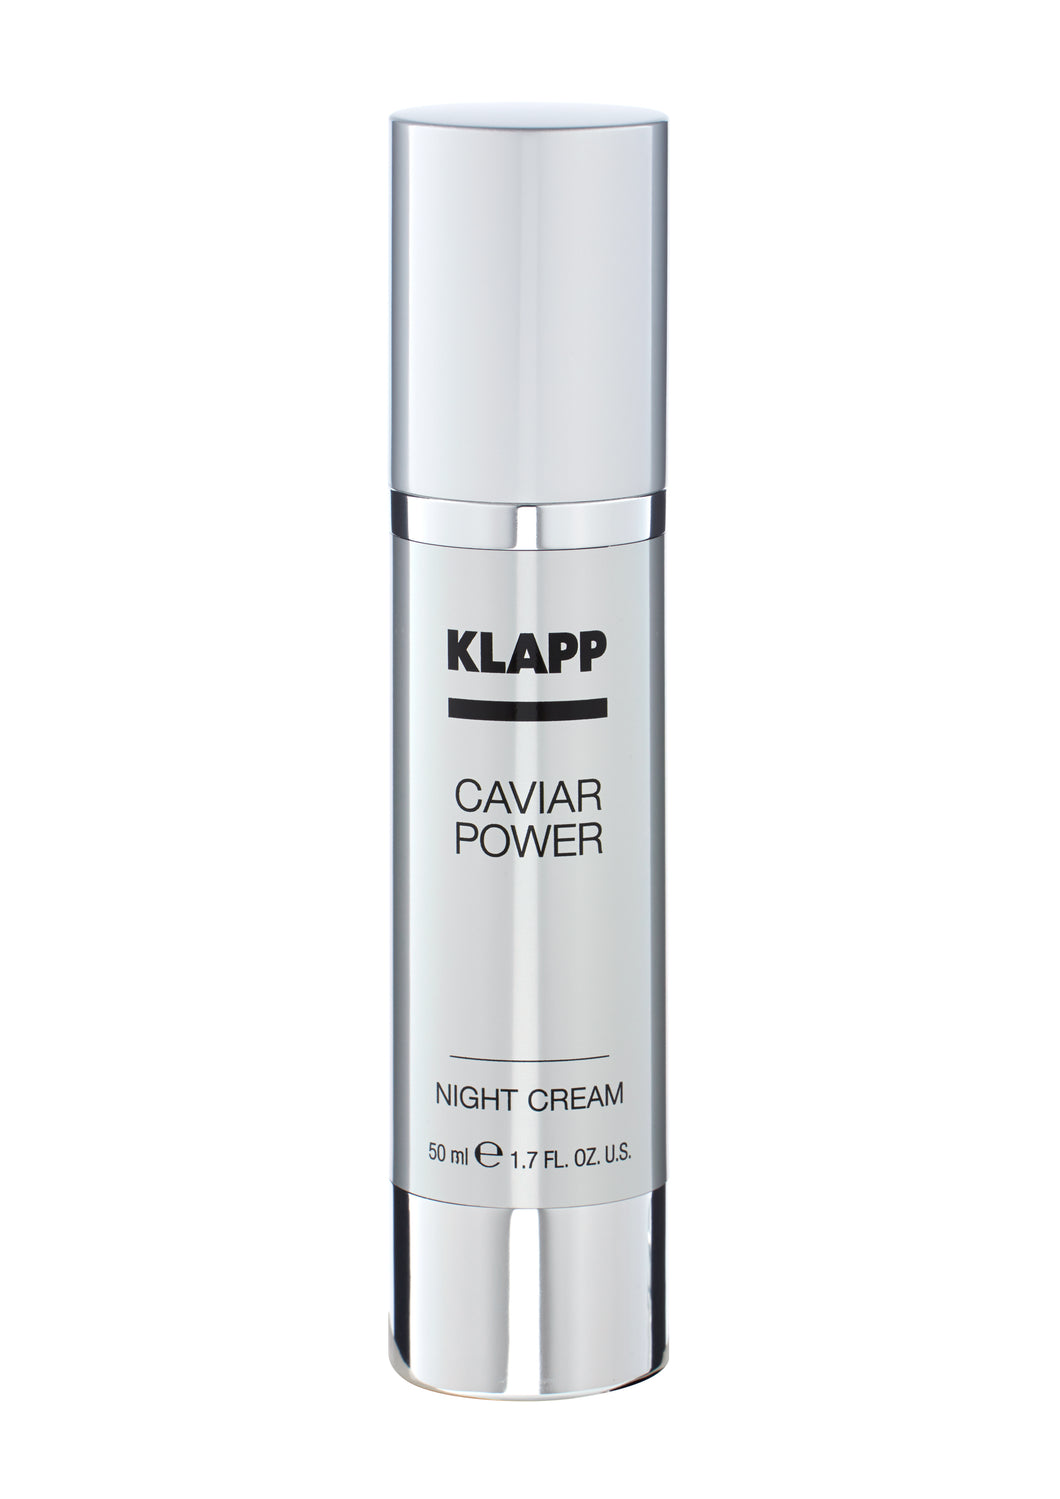 KLAPP CAVIAR POWER Night Cream 50ml